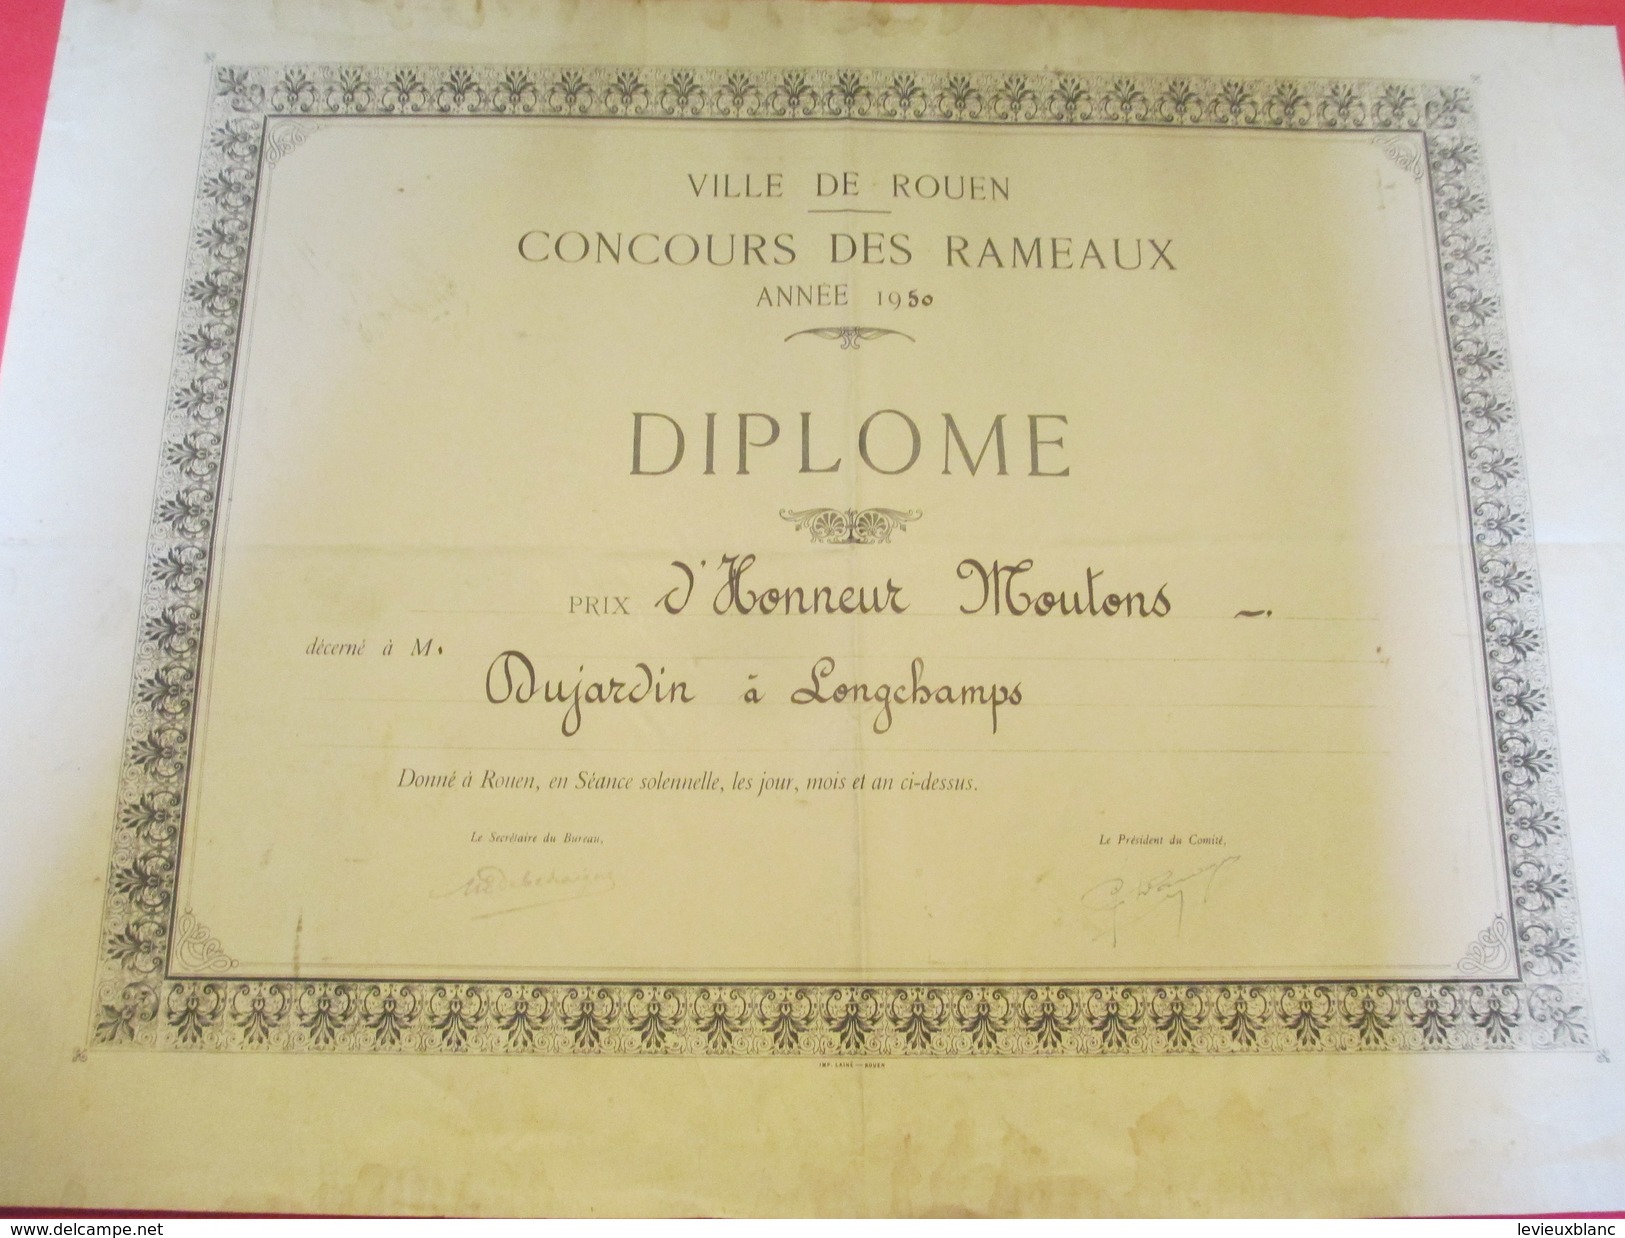 Diplôme / Agriculture/ROUEN/Concours Des Rameaux/Prix D'Honneur Moutons/DUJARDIN/Longchamps/1950   DIP172 - Diplome Und Schulzeugnisse